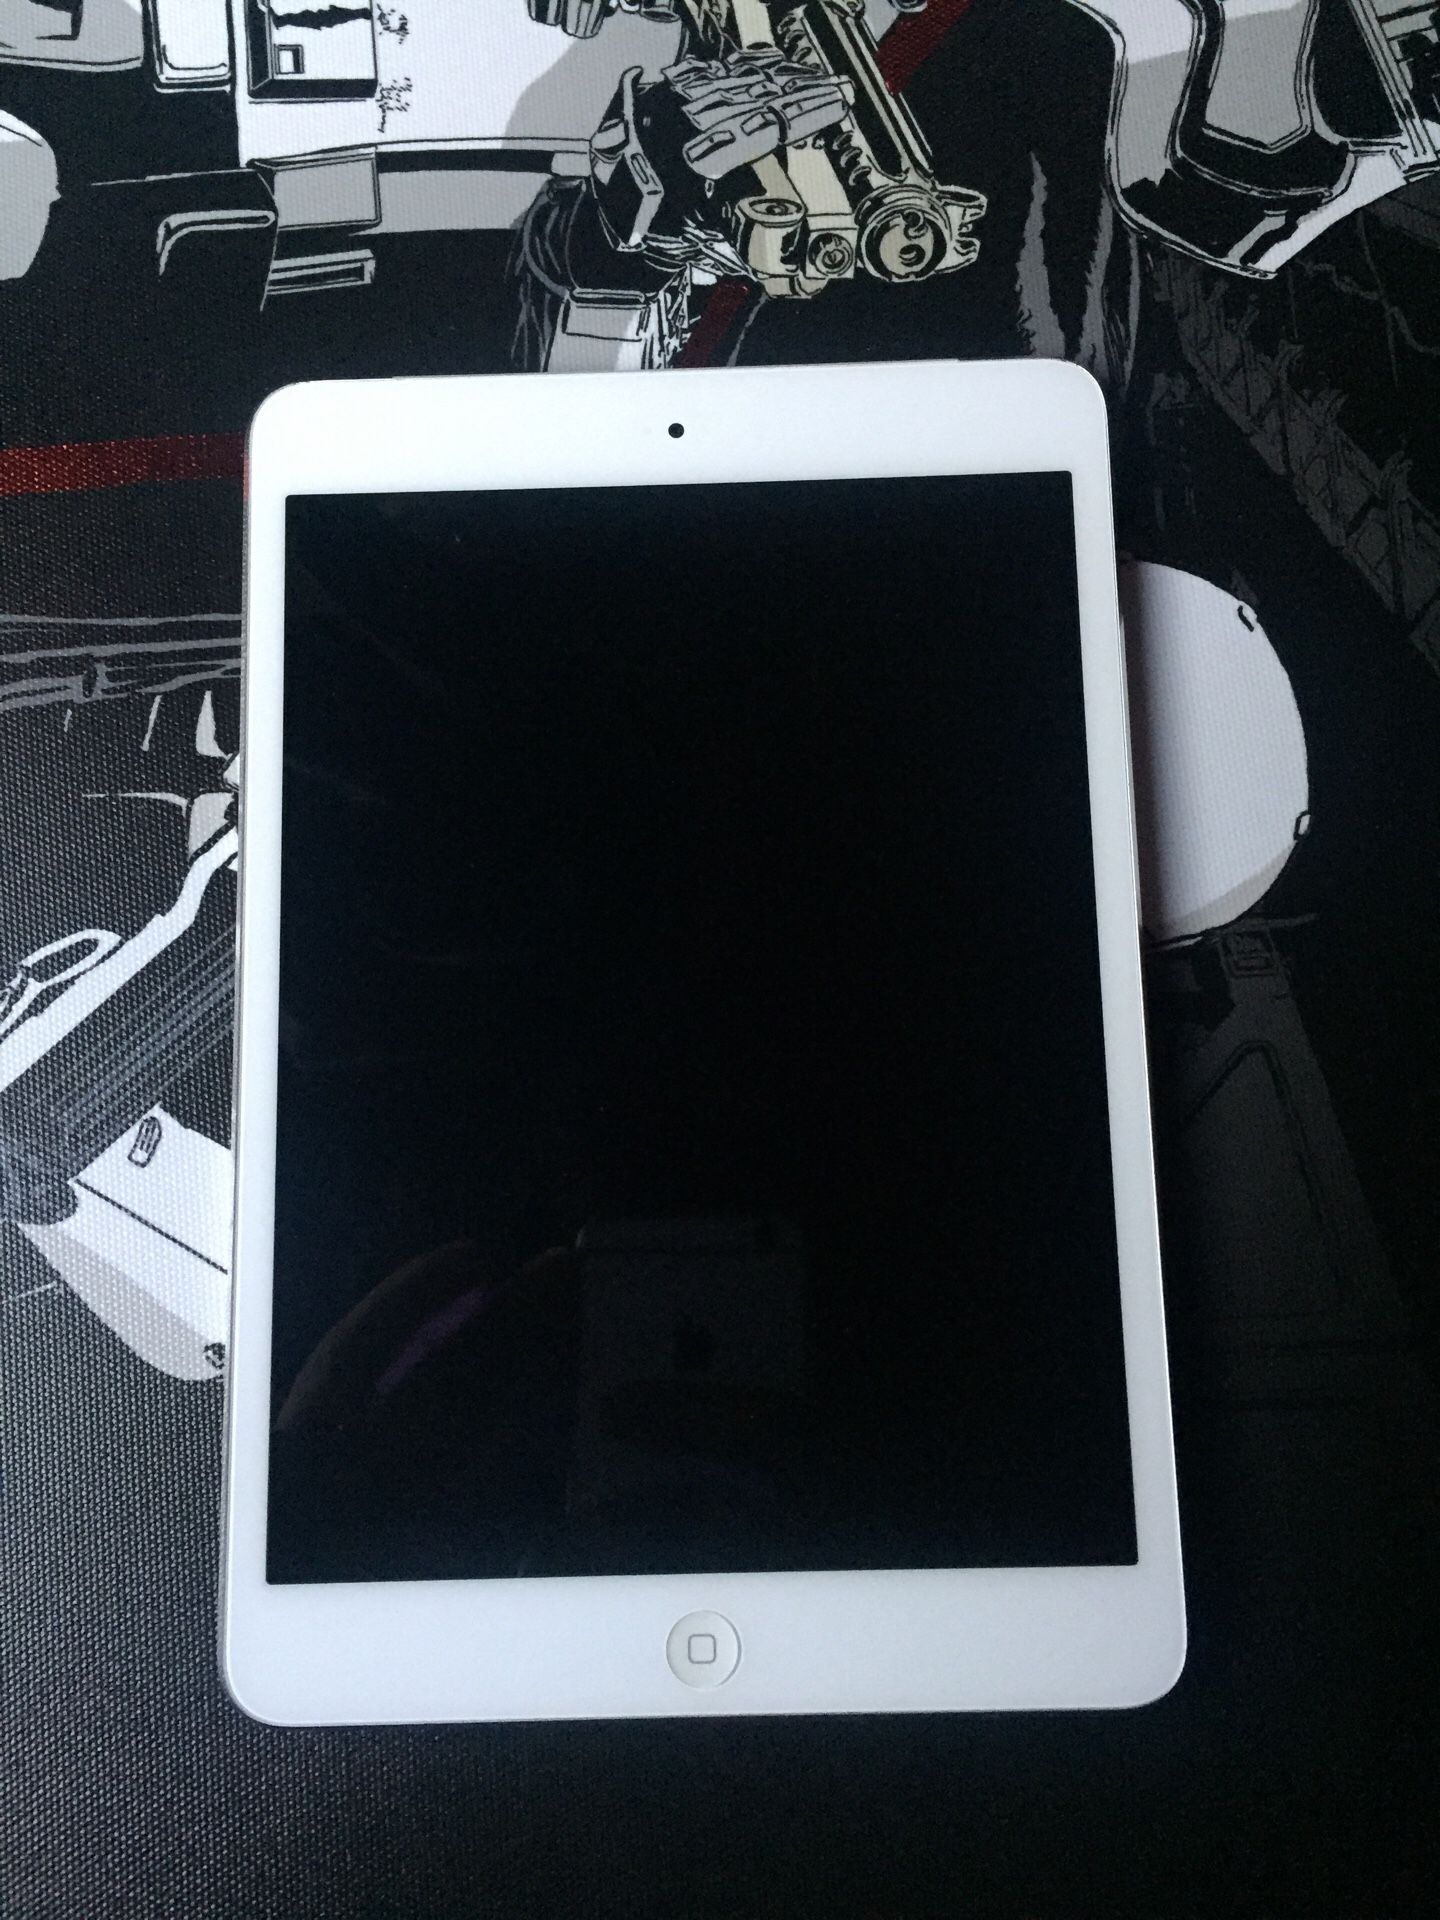 iPad Mini 1st Gen